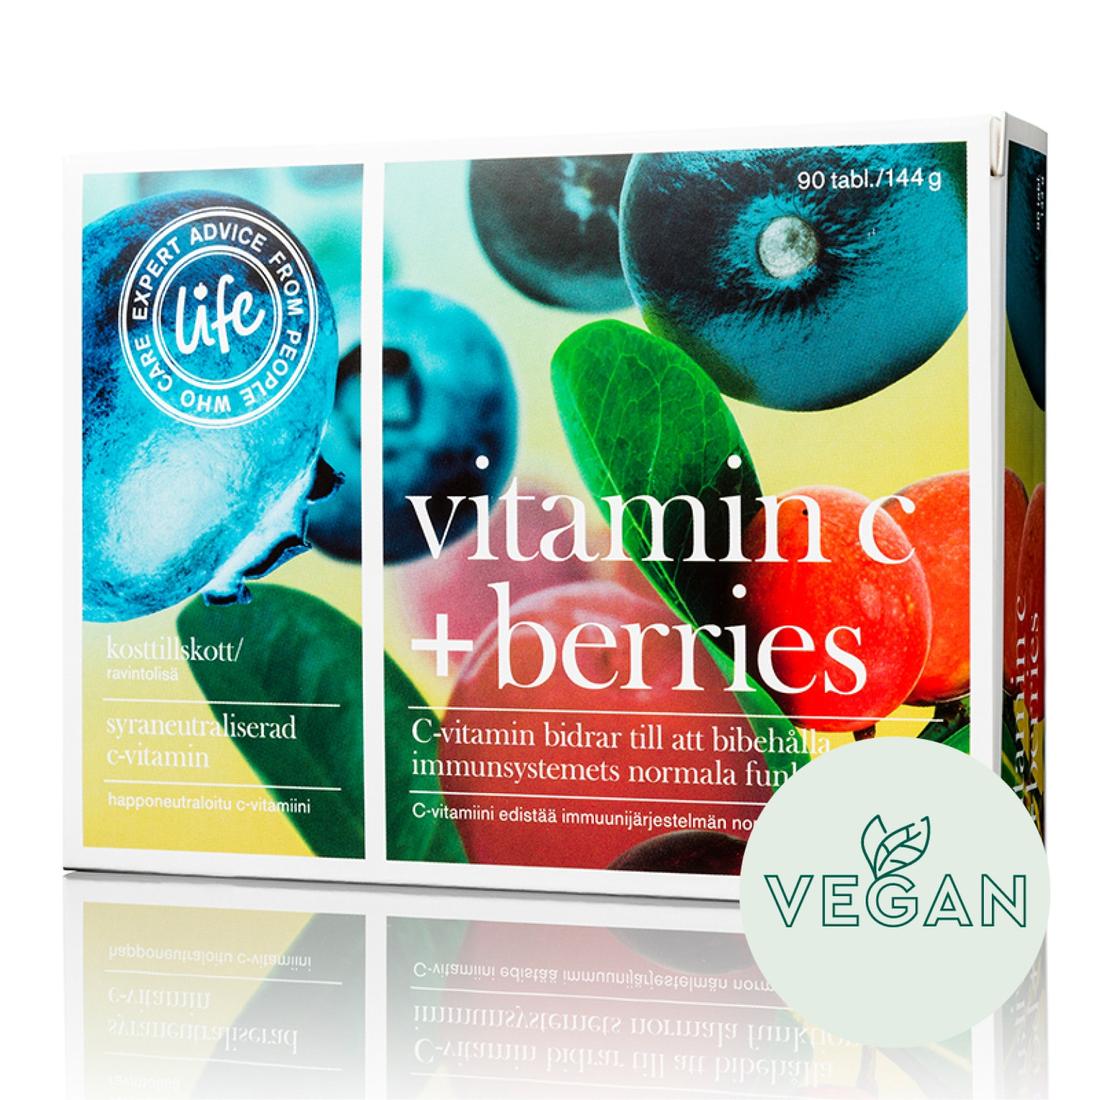 Life Vitamin C + Berries Vahva C-vitamiini tuote hintaan 21,9€ liikkeestä Life